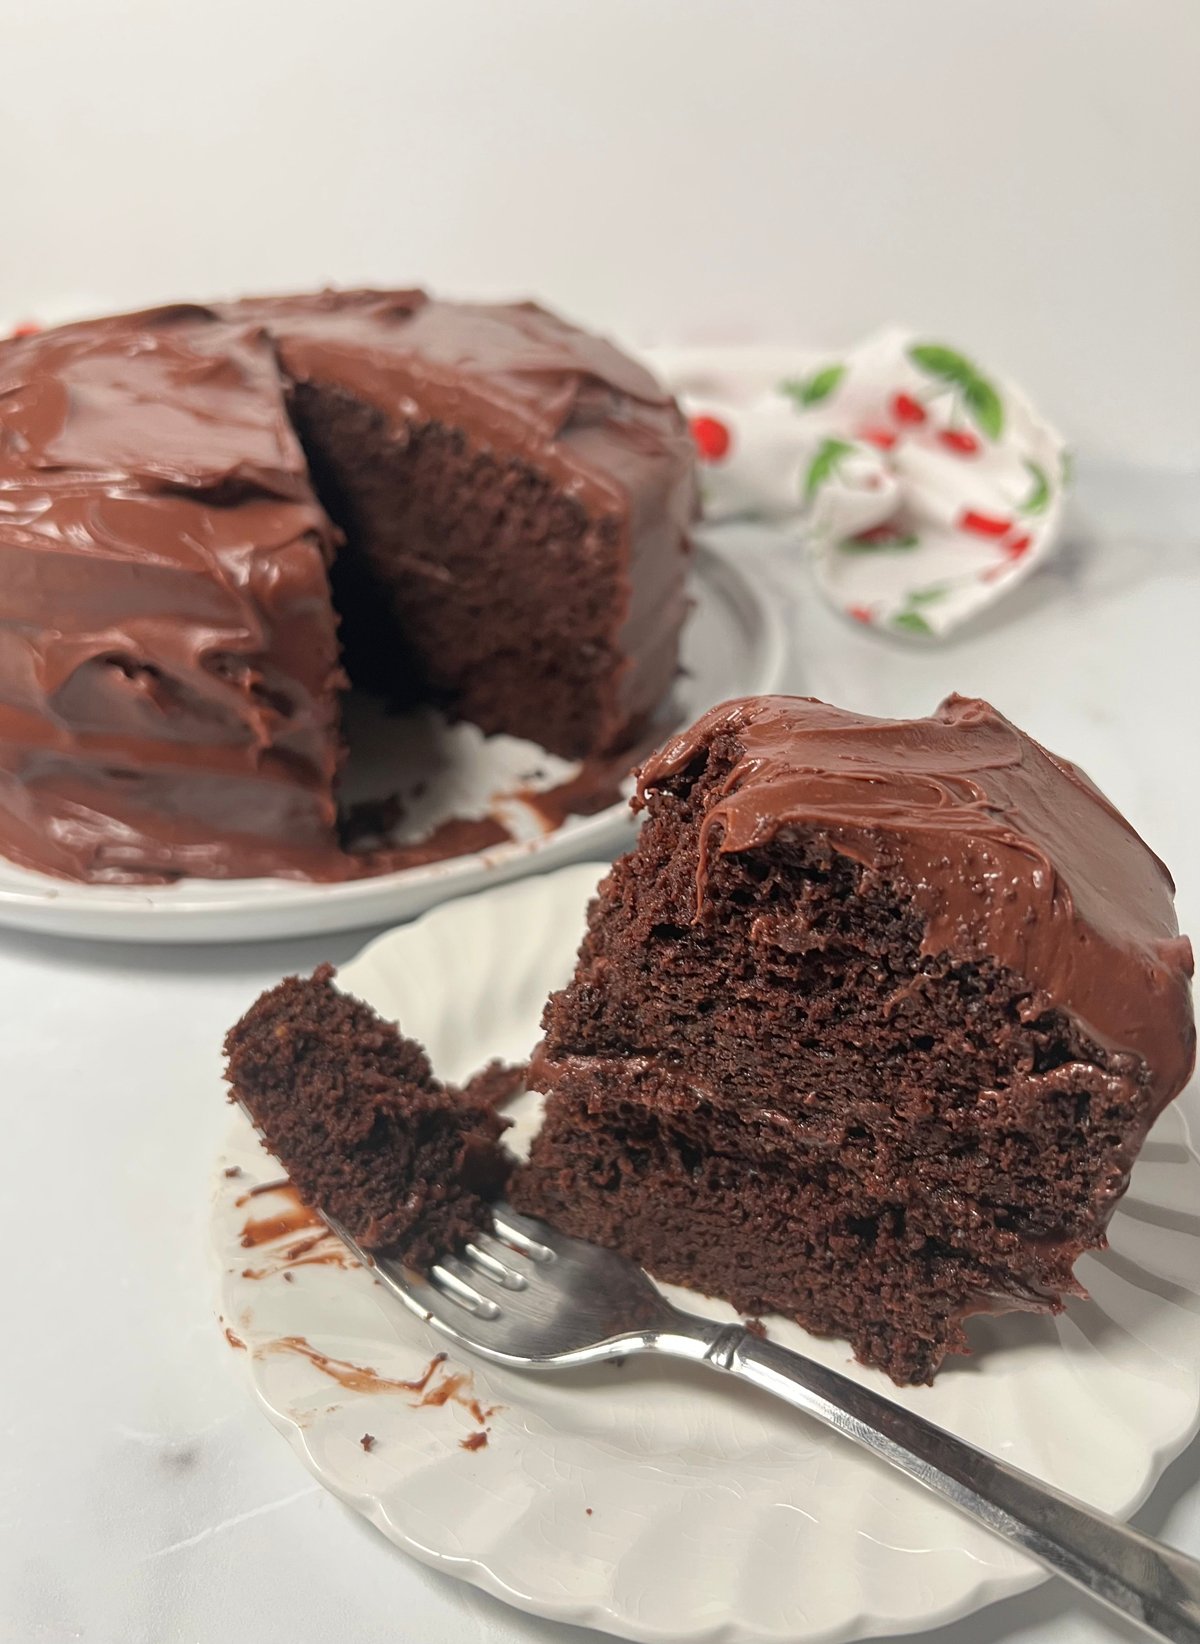 Slice of chocolate cake.